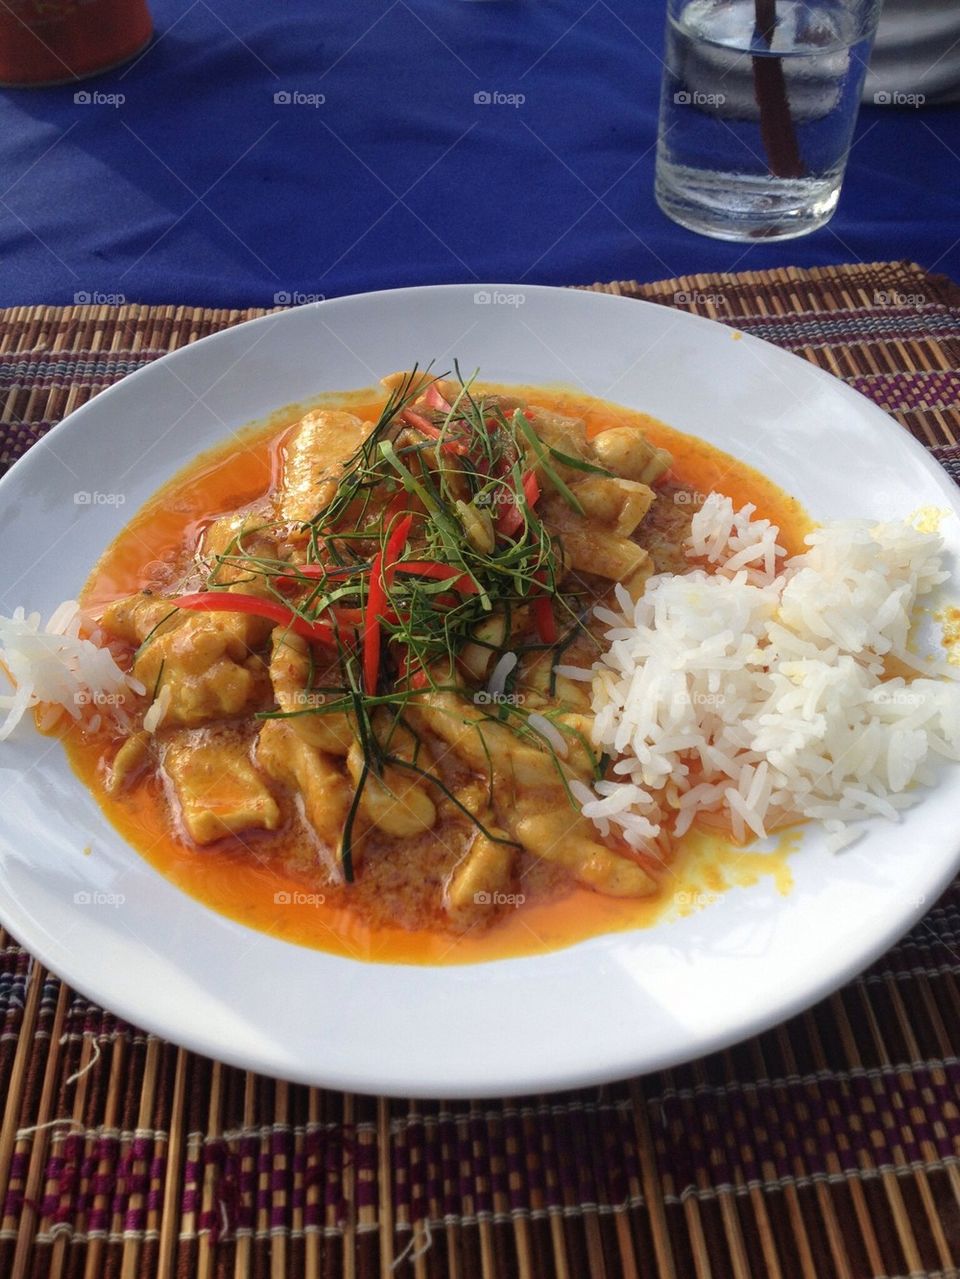 food thailand koh samui thai food by aja064